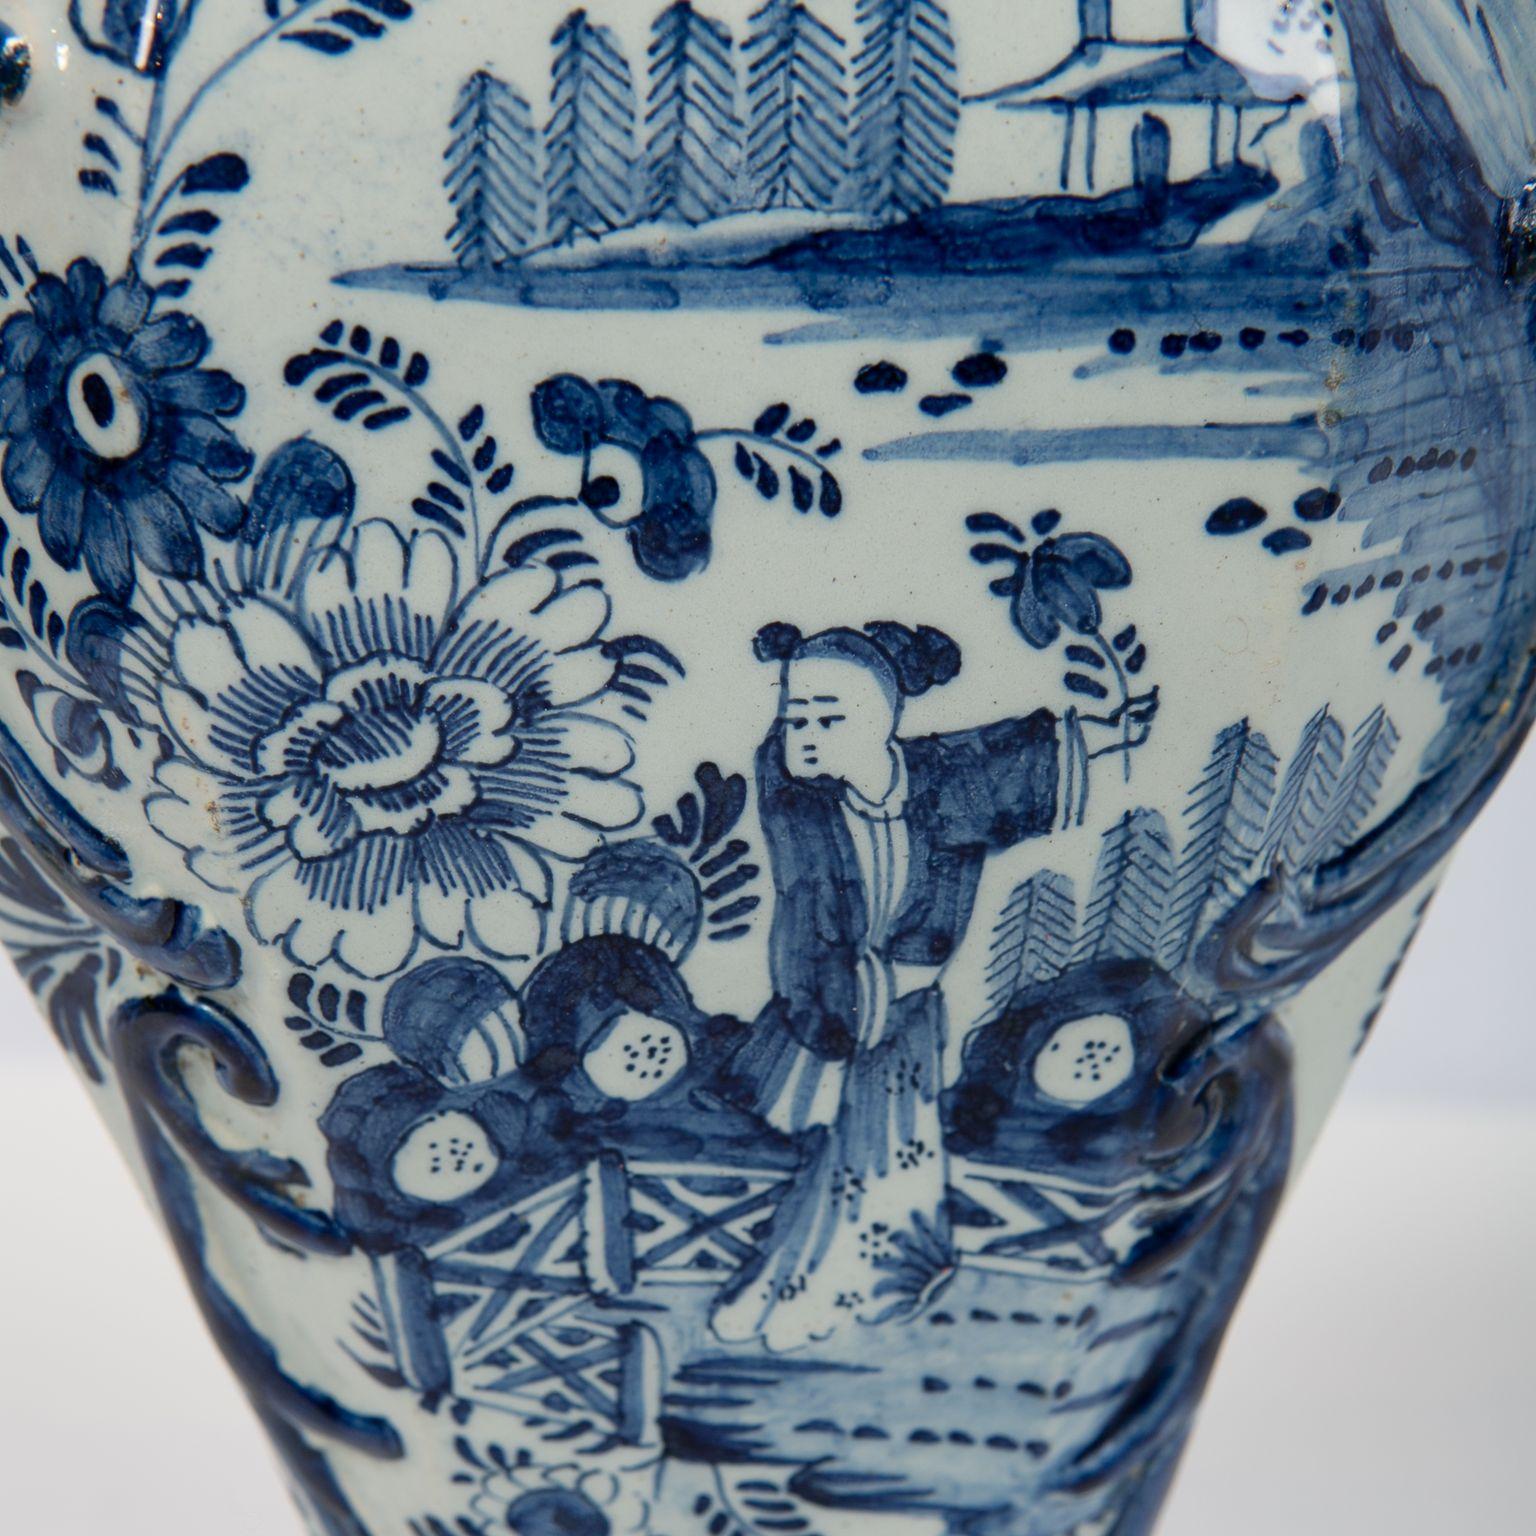 Romantic Pair Blue and White Delft Mantle Vases Made by De Grieksche A, circa 1703-1722